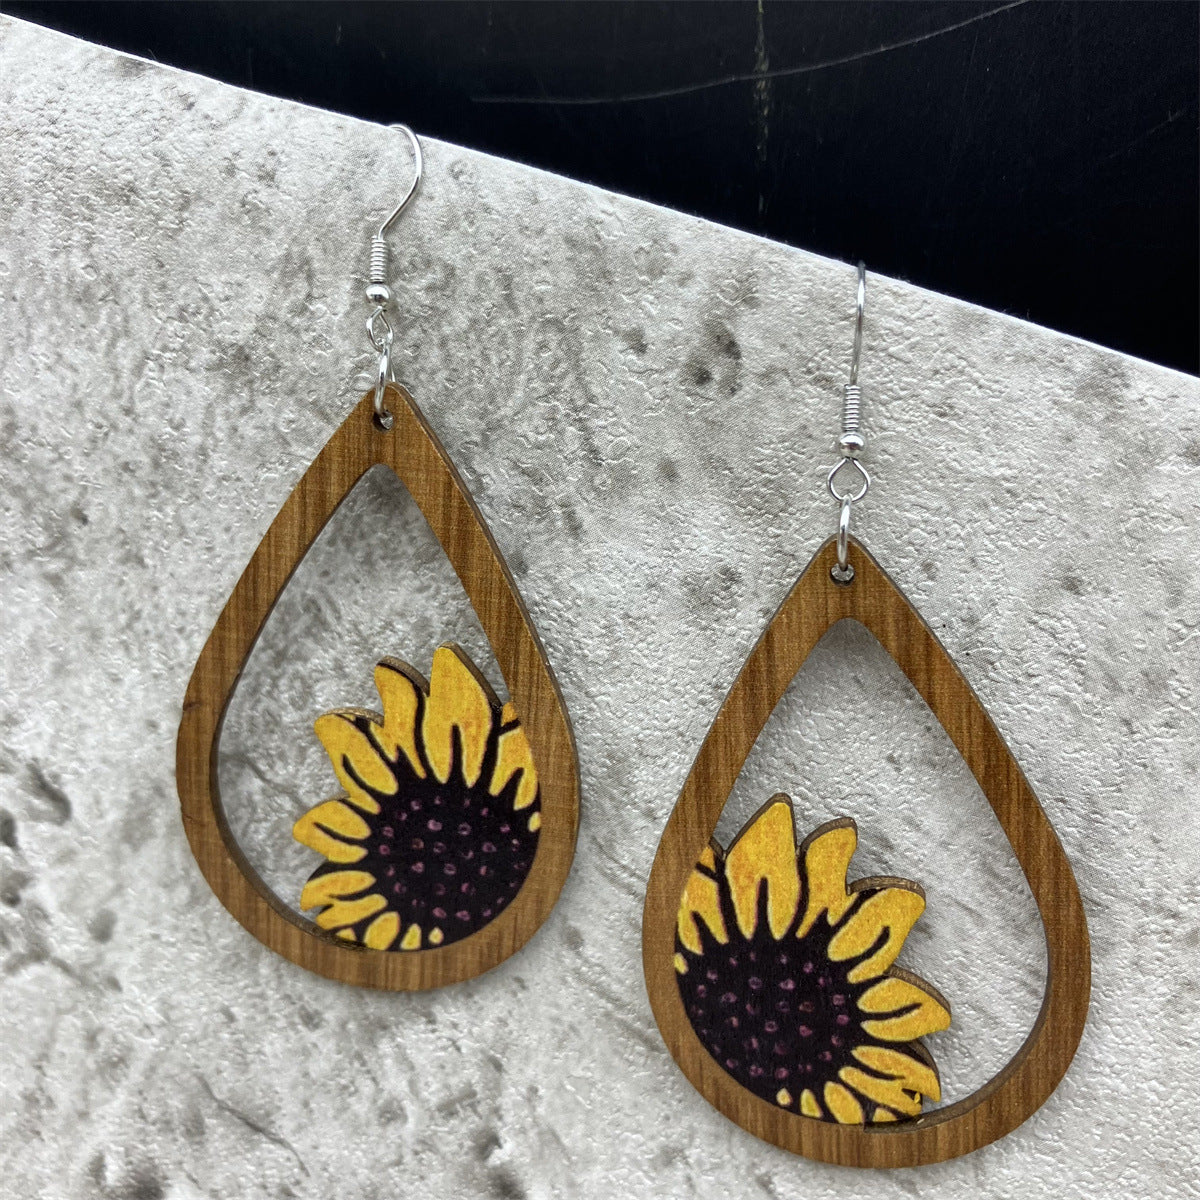 Sunflower SUNFLOWER Wooden Vintage Large Earrings